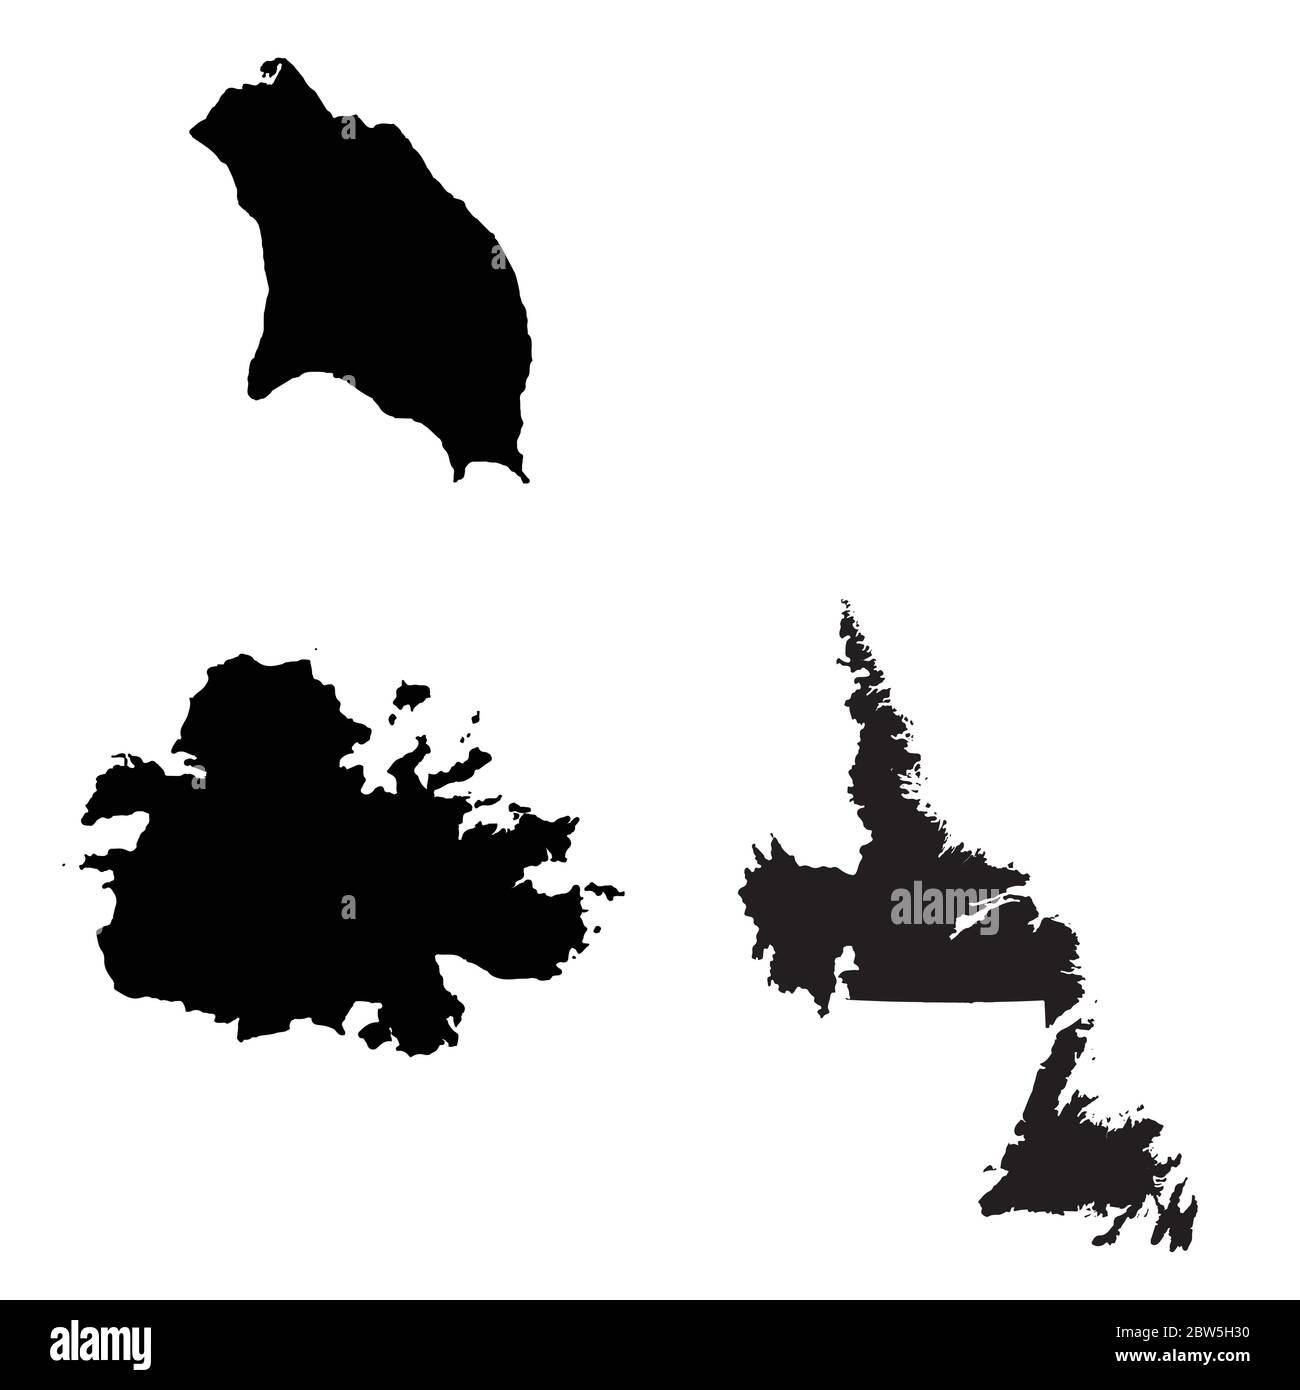 Mappa vettoriale Antigua e Barbuda e St johns. Paese e capitale. Illustrazione vettoriale isolata. Nero su sfondo bianco. Illustrazione EPS 10. Illustrazione Vettoriale